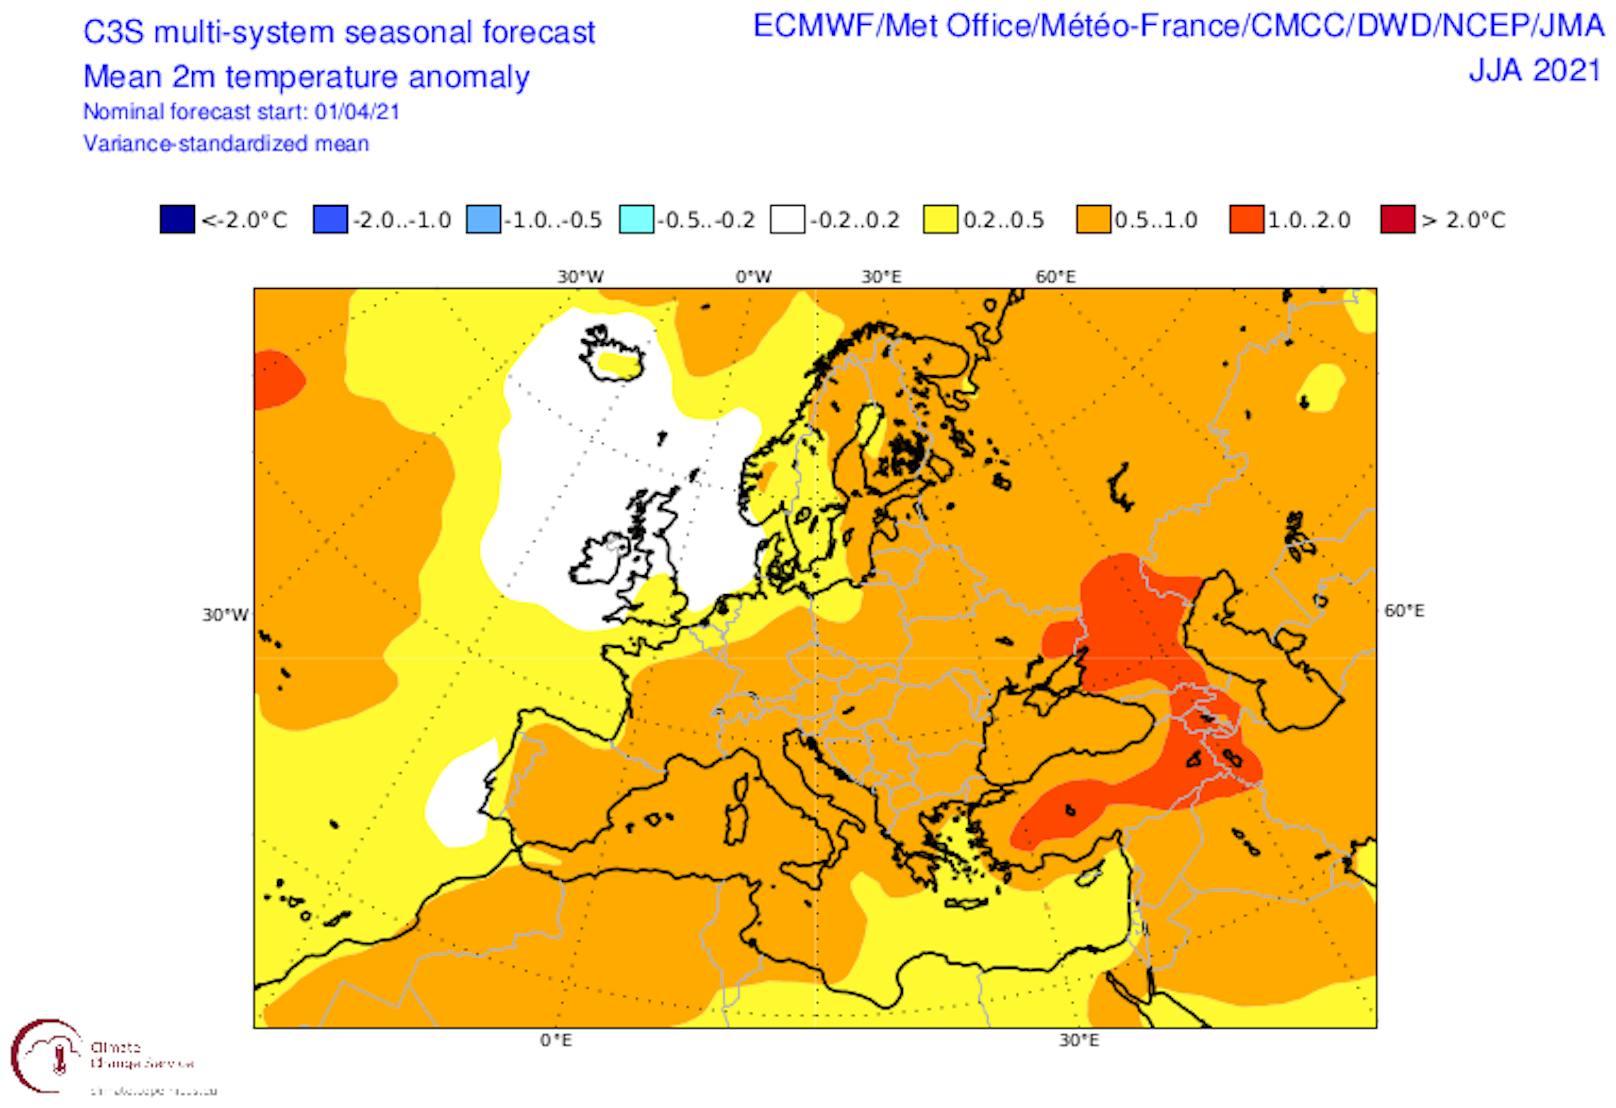 Prognose der Temperaturanomalien über Europa im kommenden Sommer